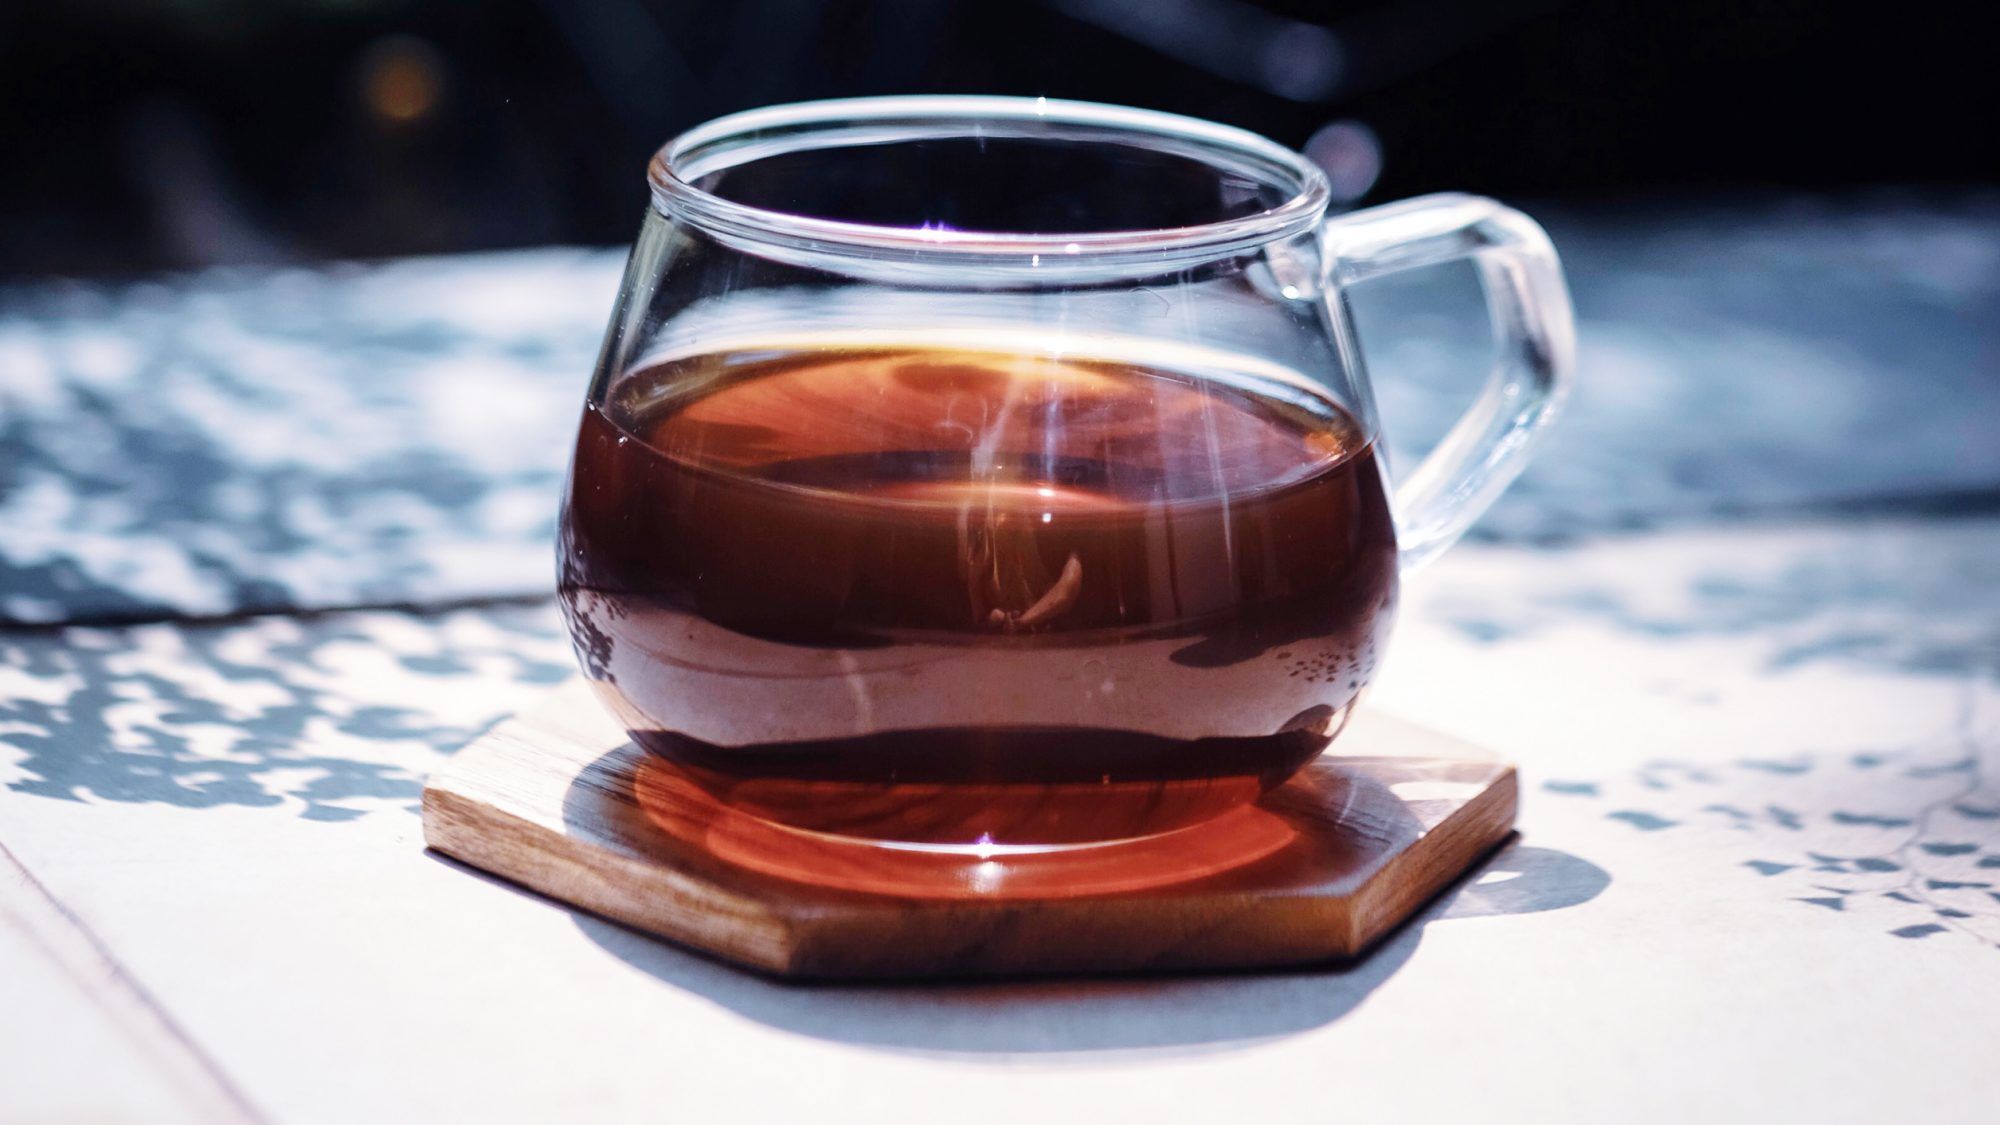 Incontra Guayusa, un tè antinfiammatorio garantito per aumentare i tuoi livelli di energia